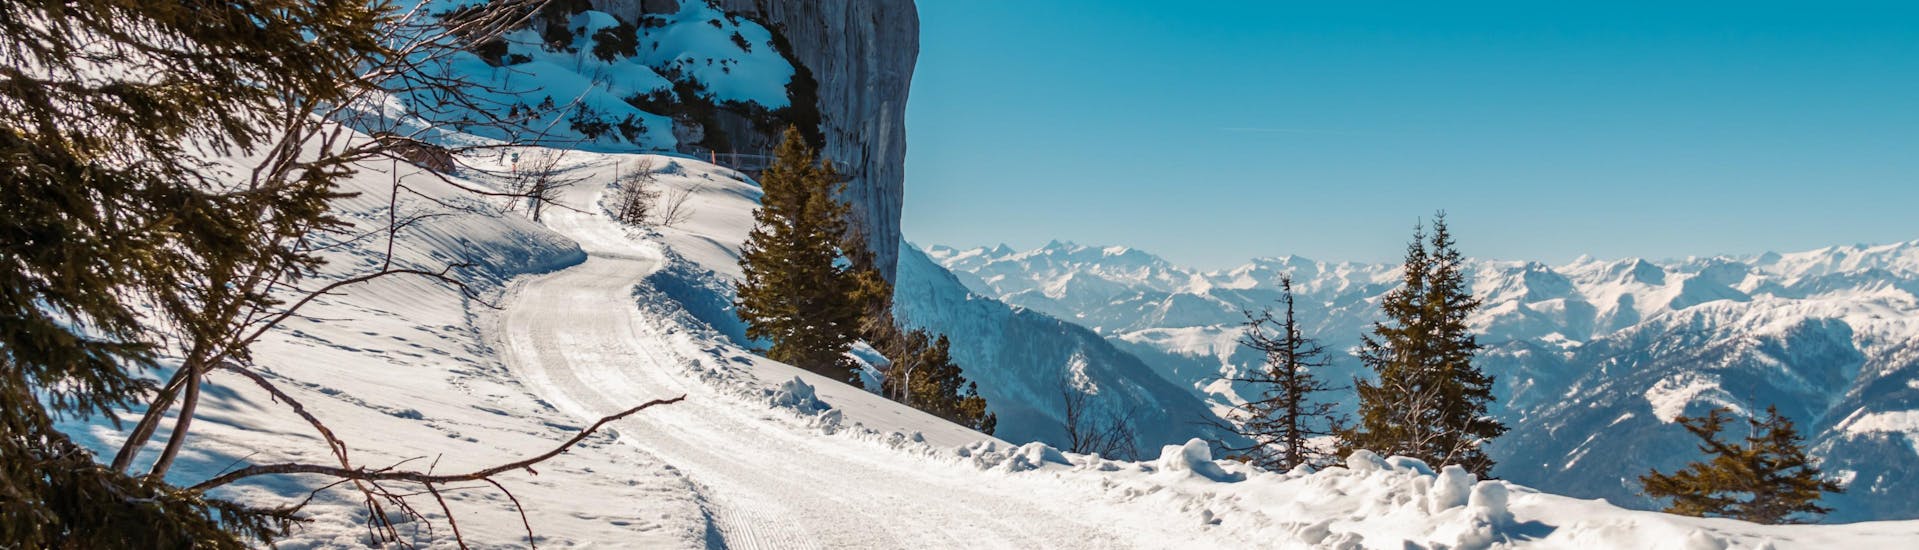 Ein Blick über das traumhafte Bergpanorama um Waidring-Steinplatte, einem beliebten österreichischen Skigebiet in dem man bei einer der örtlichen Skischulen einen Skikurs buchen kann.